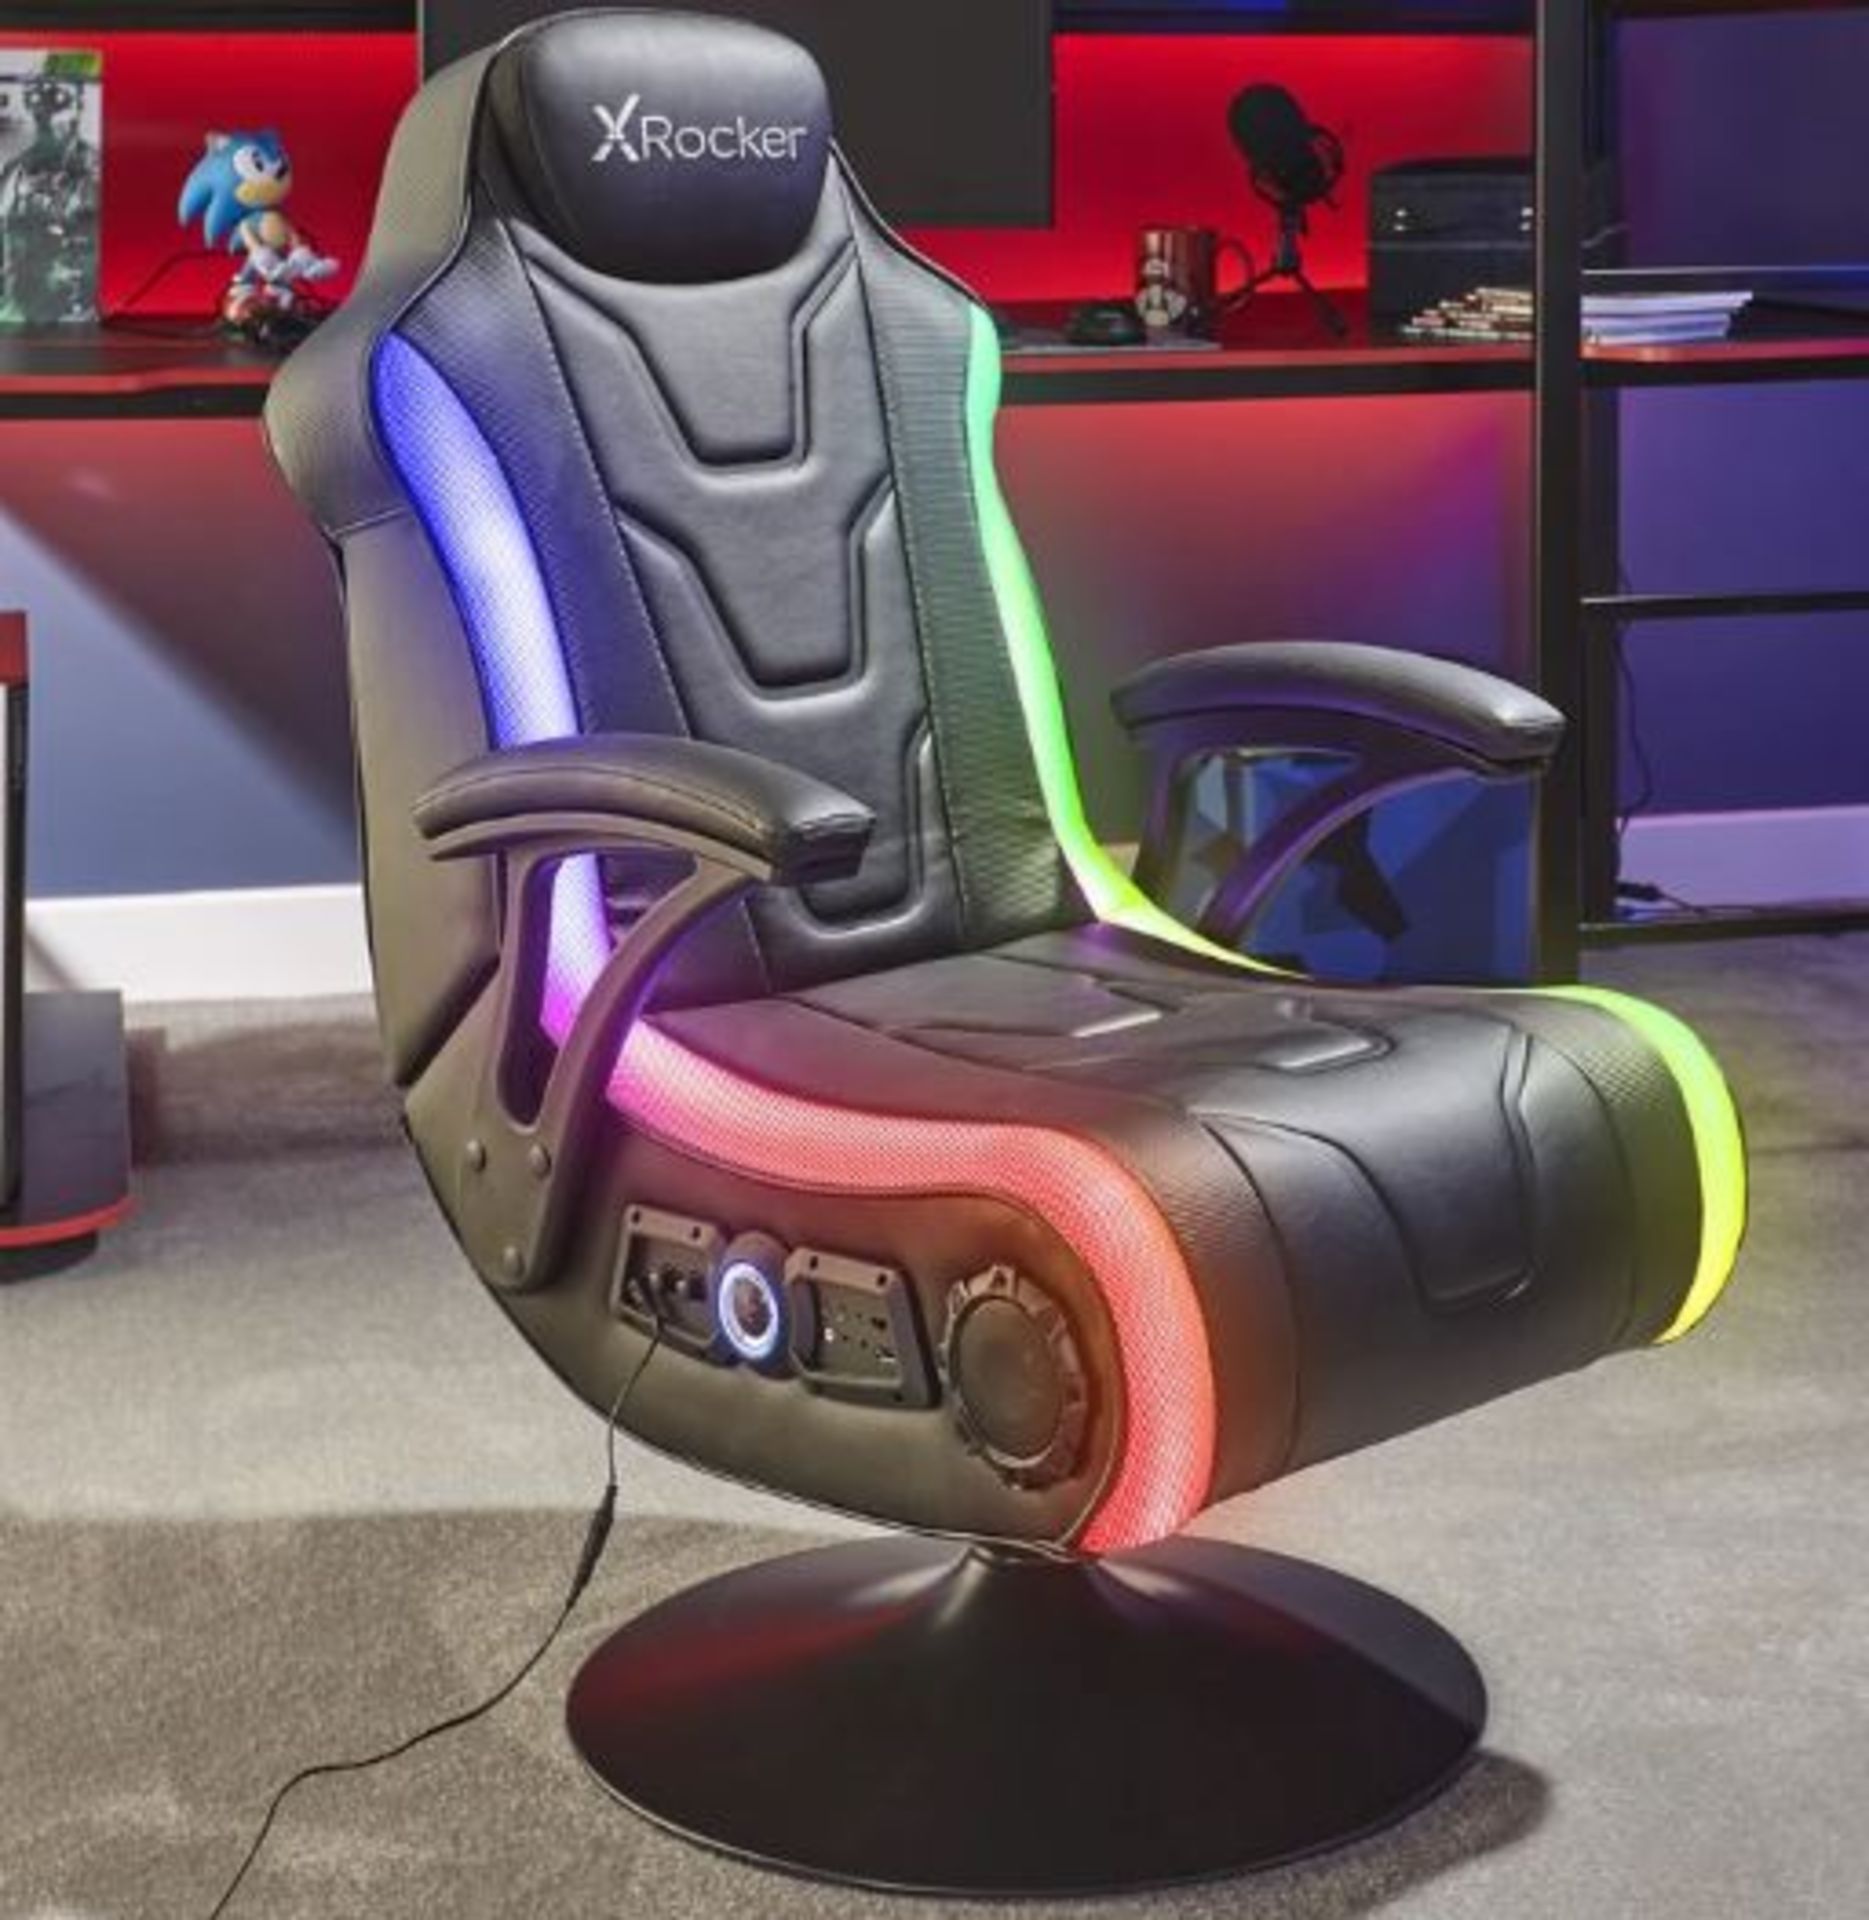 1x X-Rocker Monsoon RGB 4.1 Audio Pedestal Gaming Chair RRP £269. Gaming Chair, Pedestal Not Attach